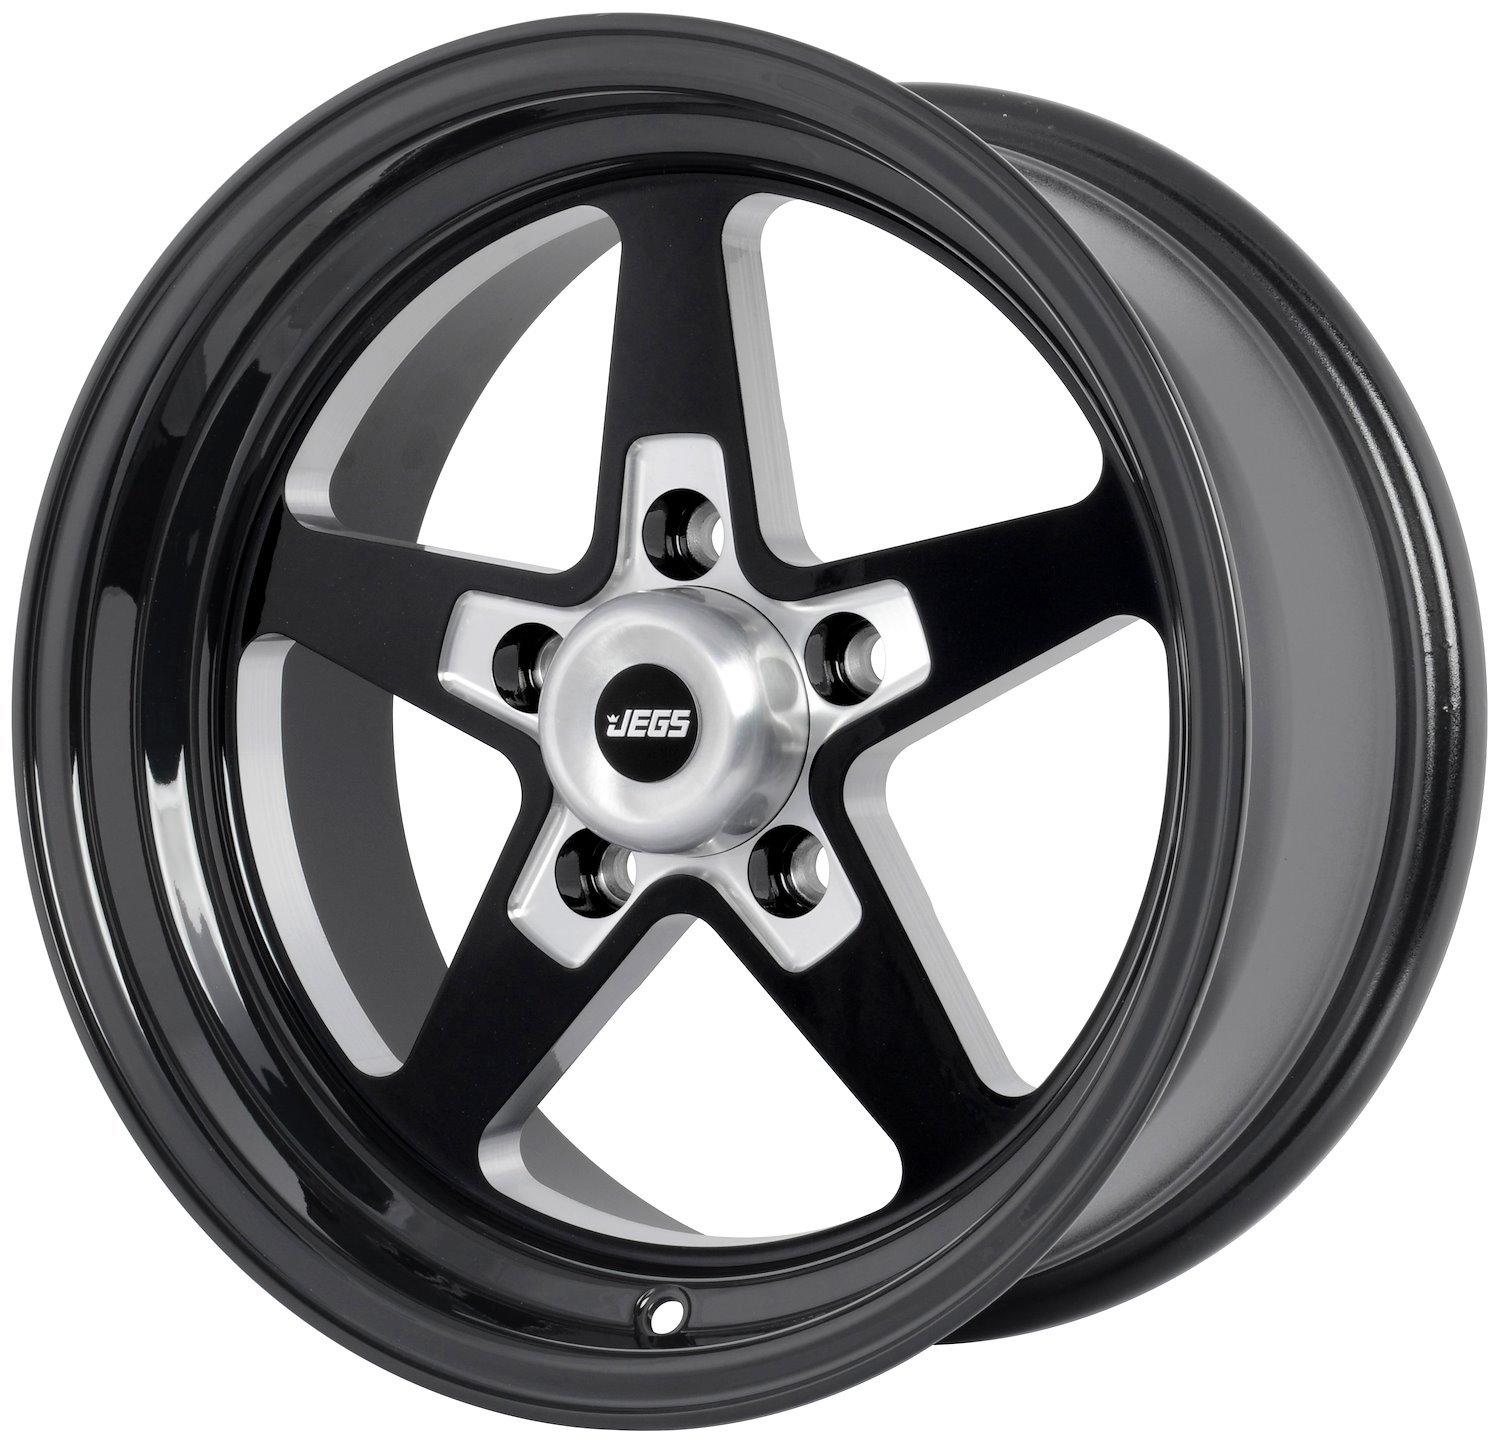 SSR Star Wheel [Size: 15" x 7"] Gloss Black